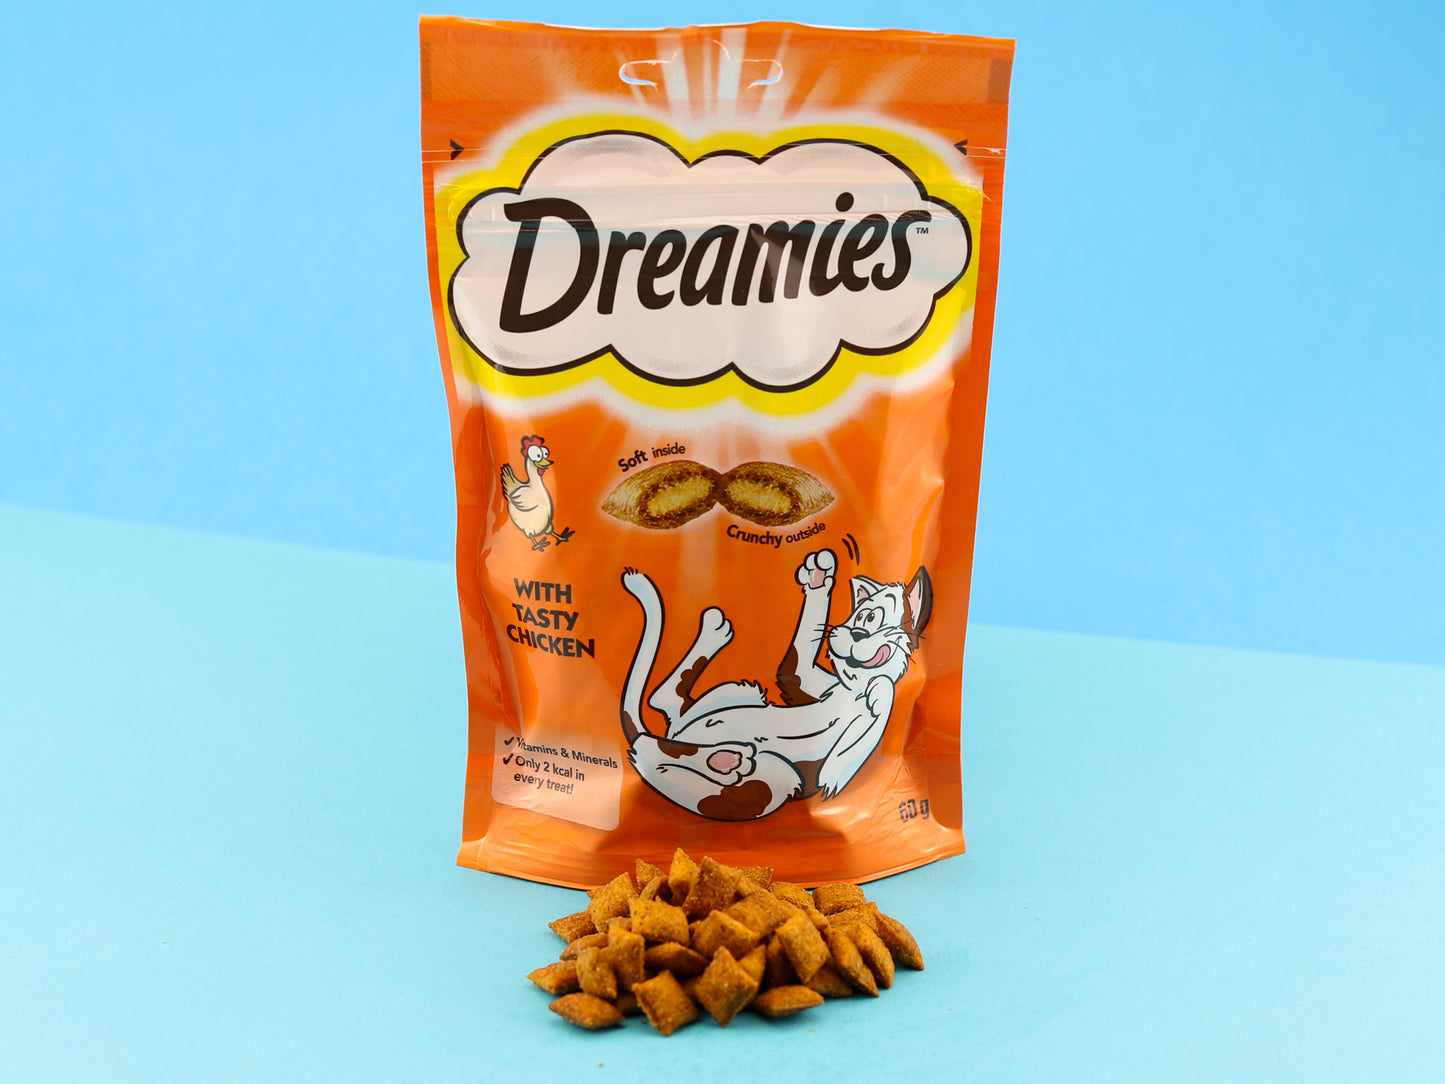 Dreamies cat treats. Chicken flavour. Orange packet